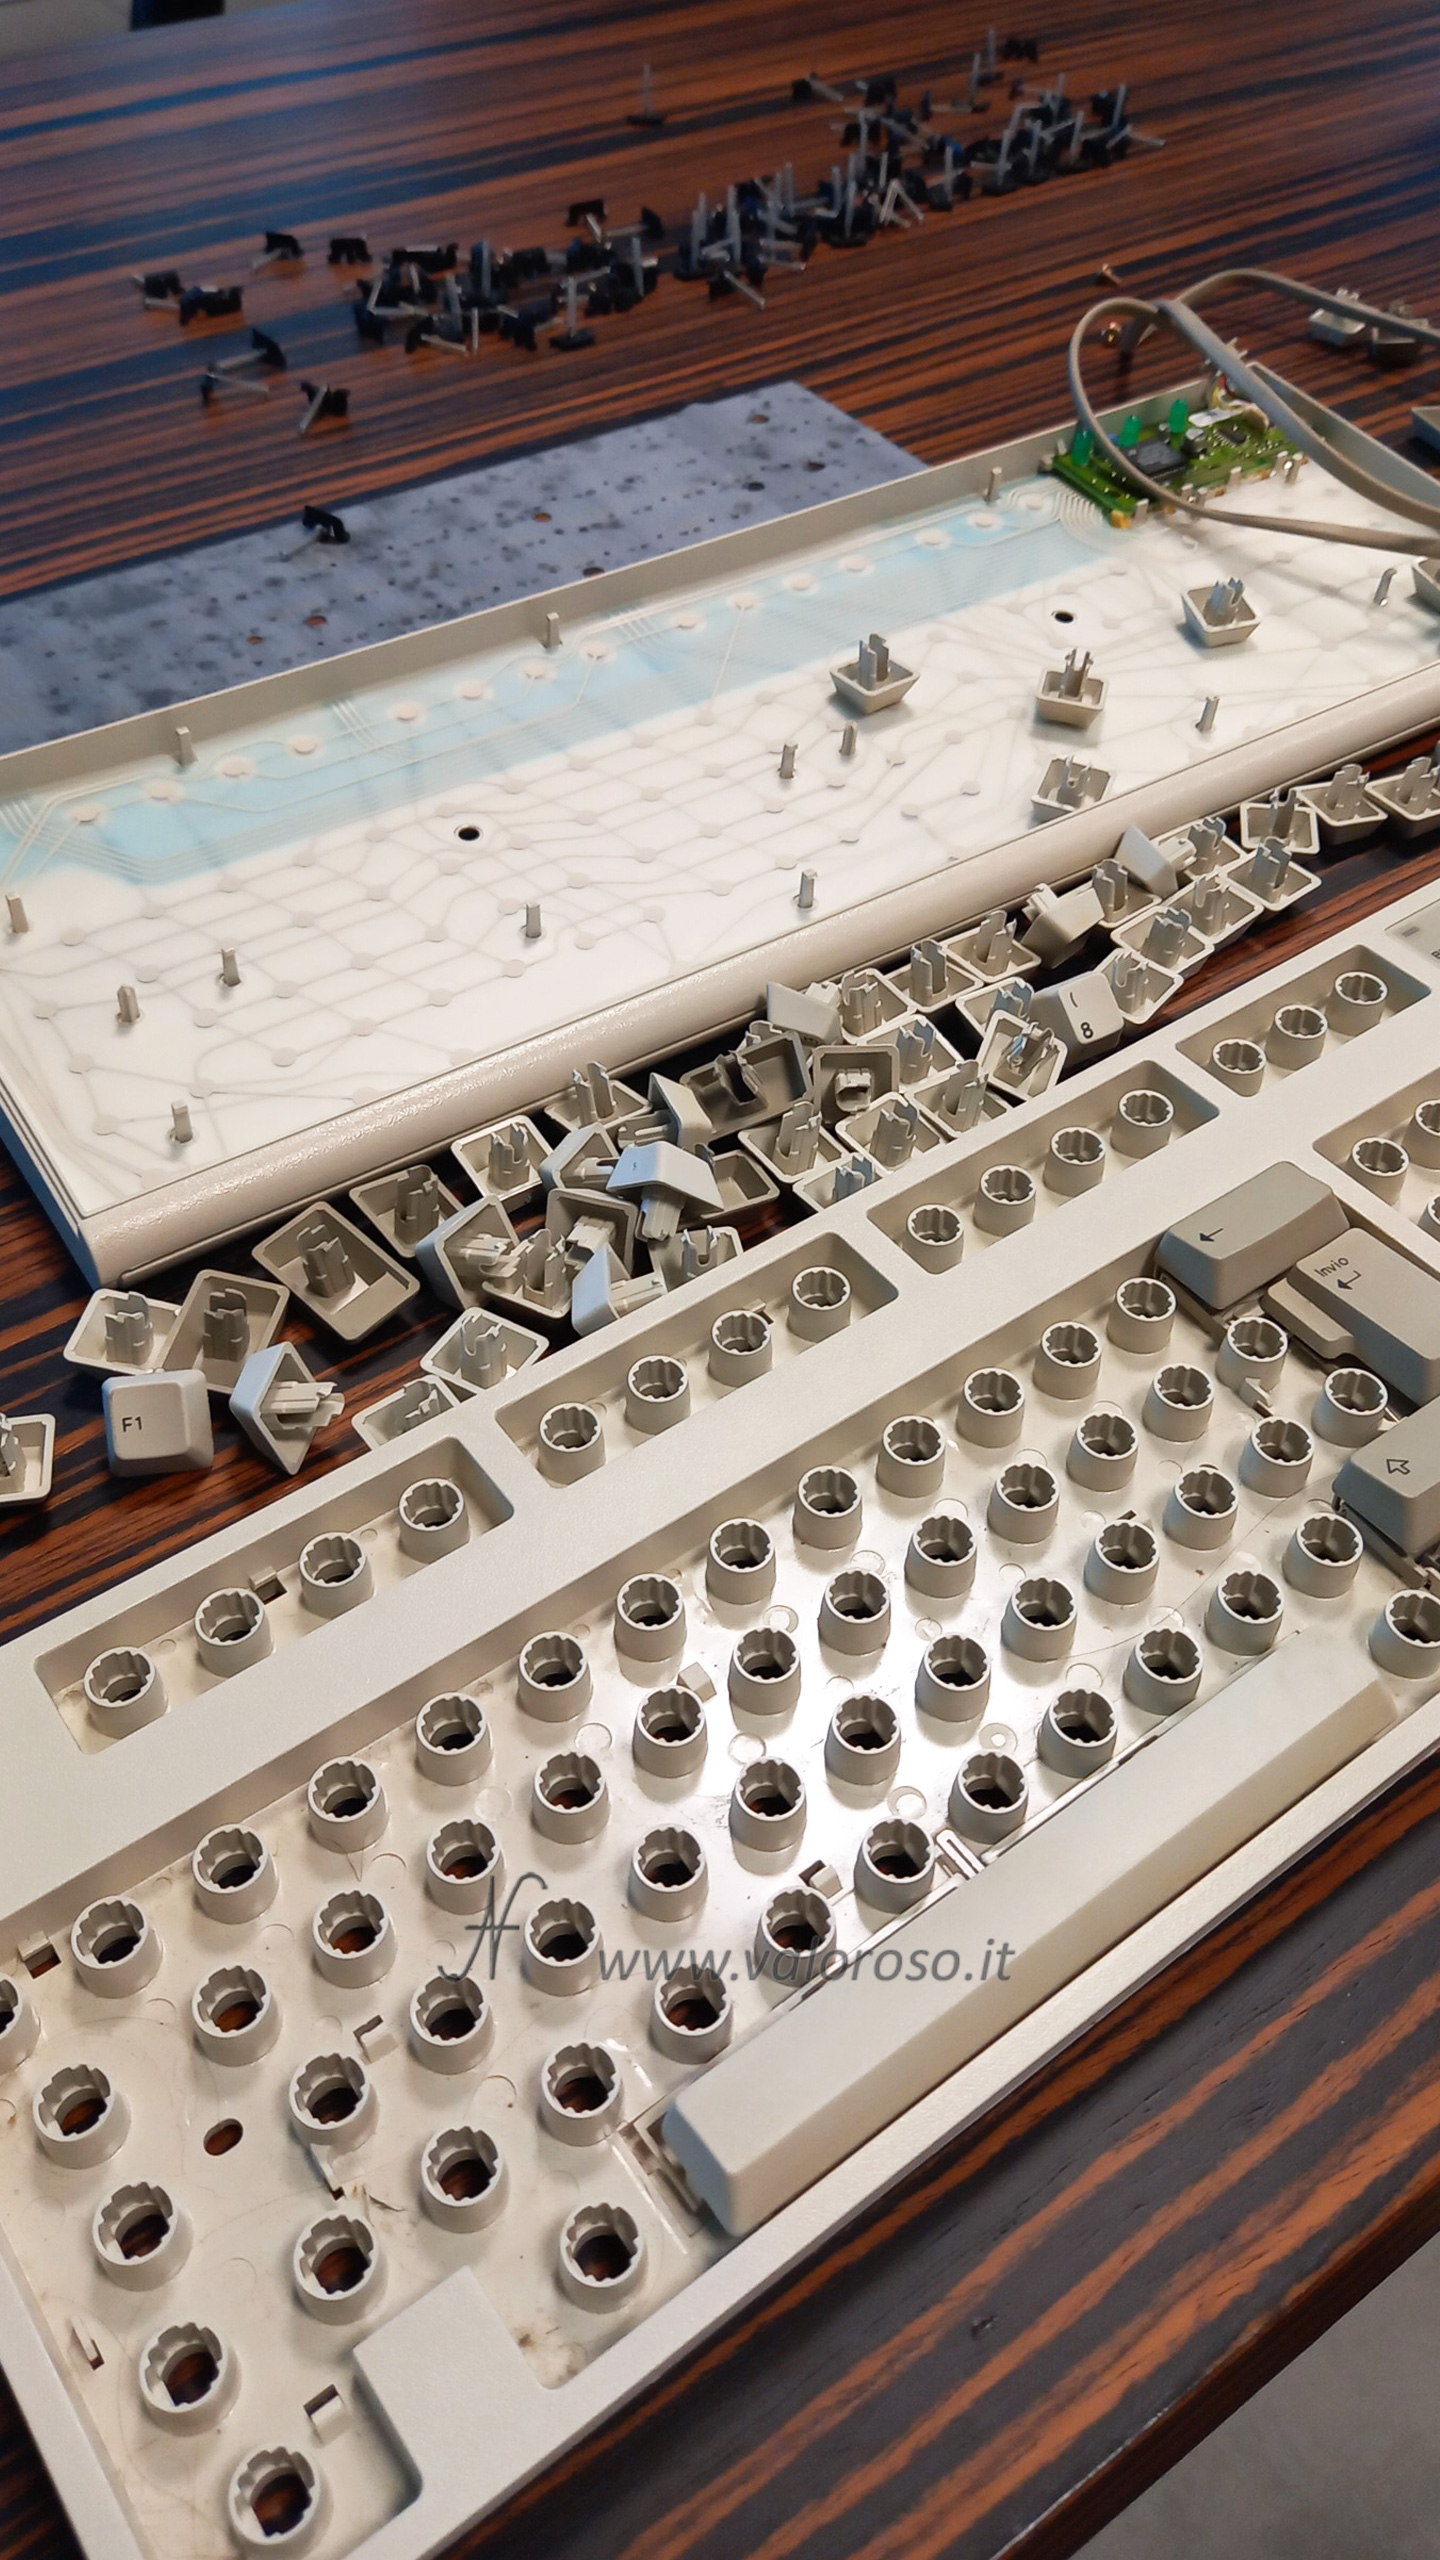 IBM PS/1 keyboard model M2 2, disassembly and repair, buckling springs, caps, membrane